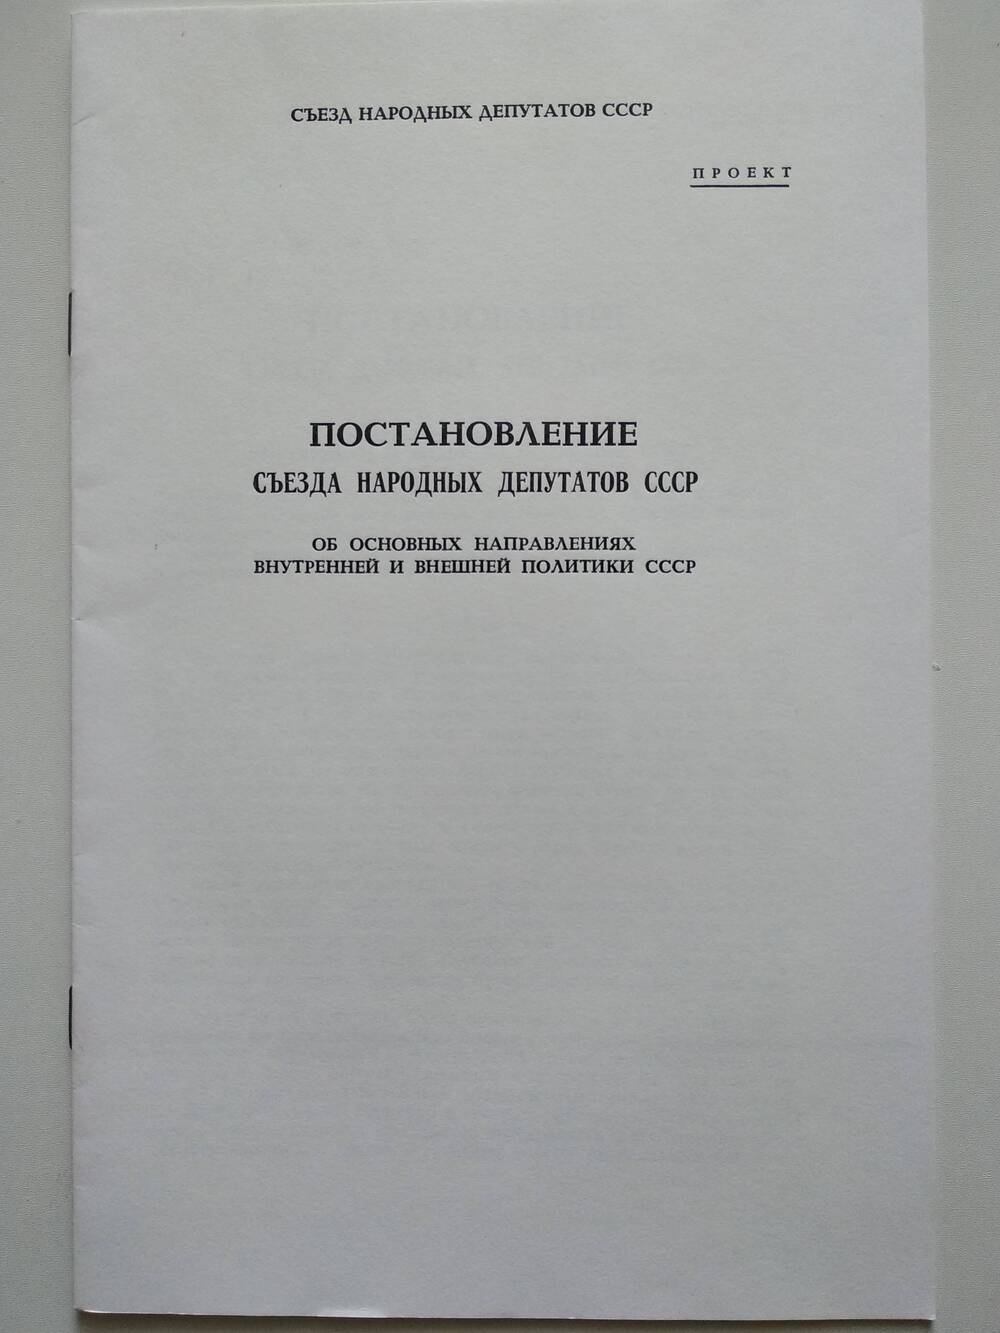 Проект постановления съезда народных депутатов СССР об основных направлениях внутренней и внешней политики СССР.